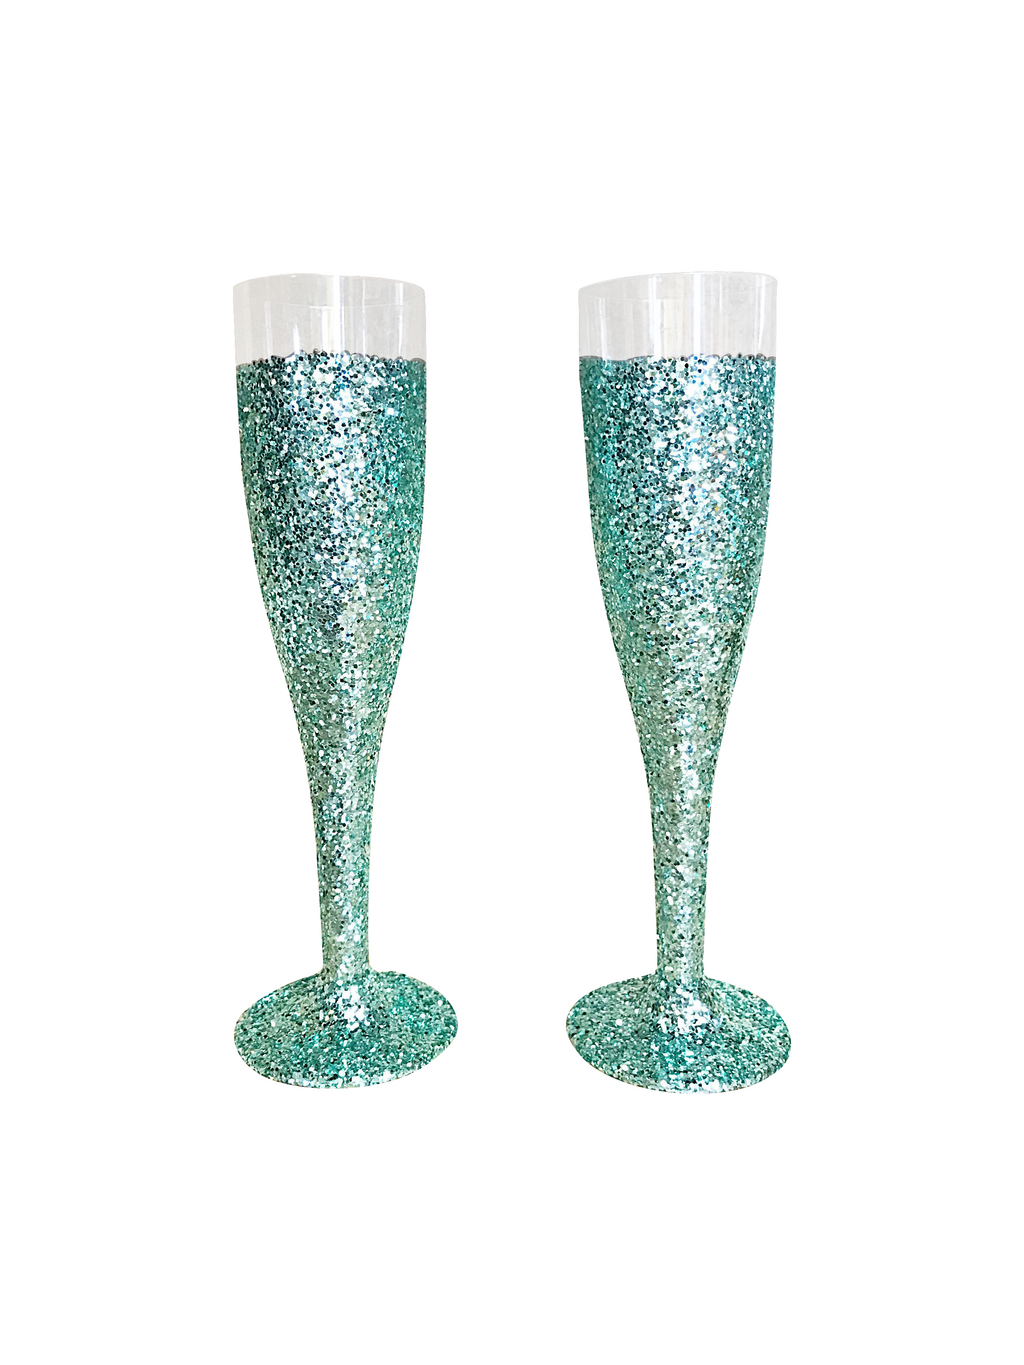 Mint Glitter Champagne Flutes